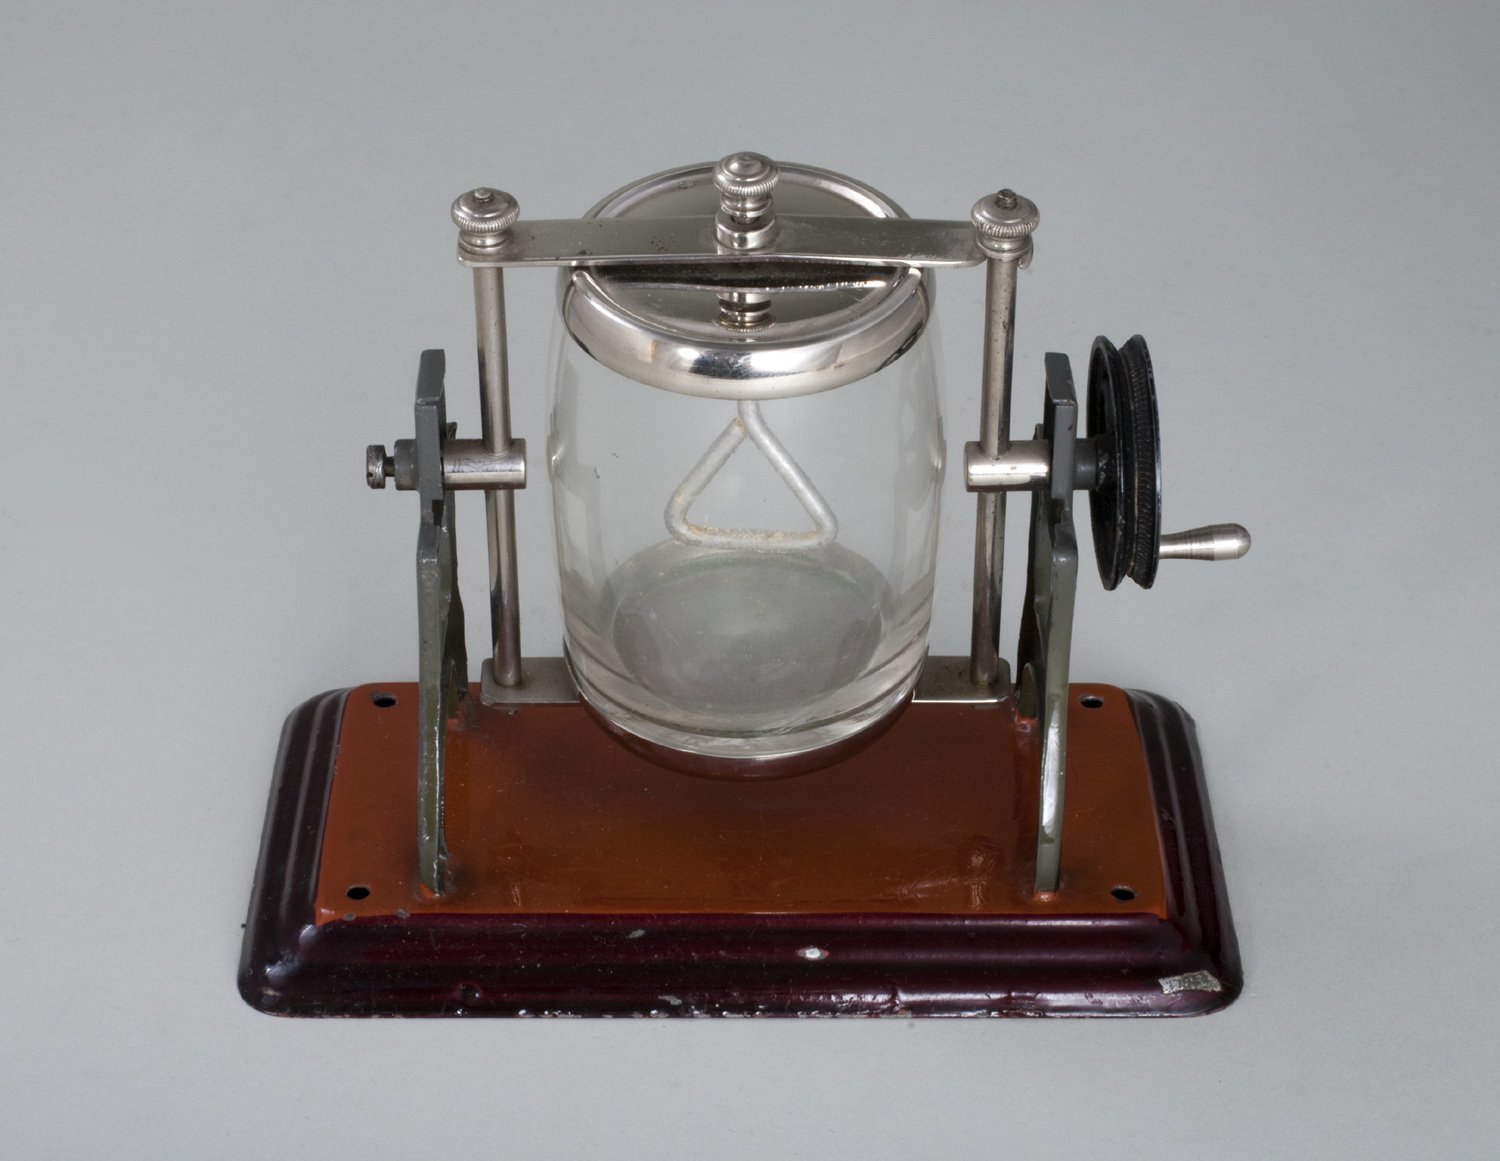 Dampfmaschinenbetriebsmodell von "Märklin" - Buttermaschine (Stiftung Domäne Dahlem - Landgut und Museum, Weiternutzung nur mit Genehmigung des Museums CC BY-NC-SA)